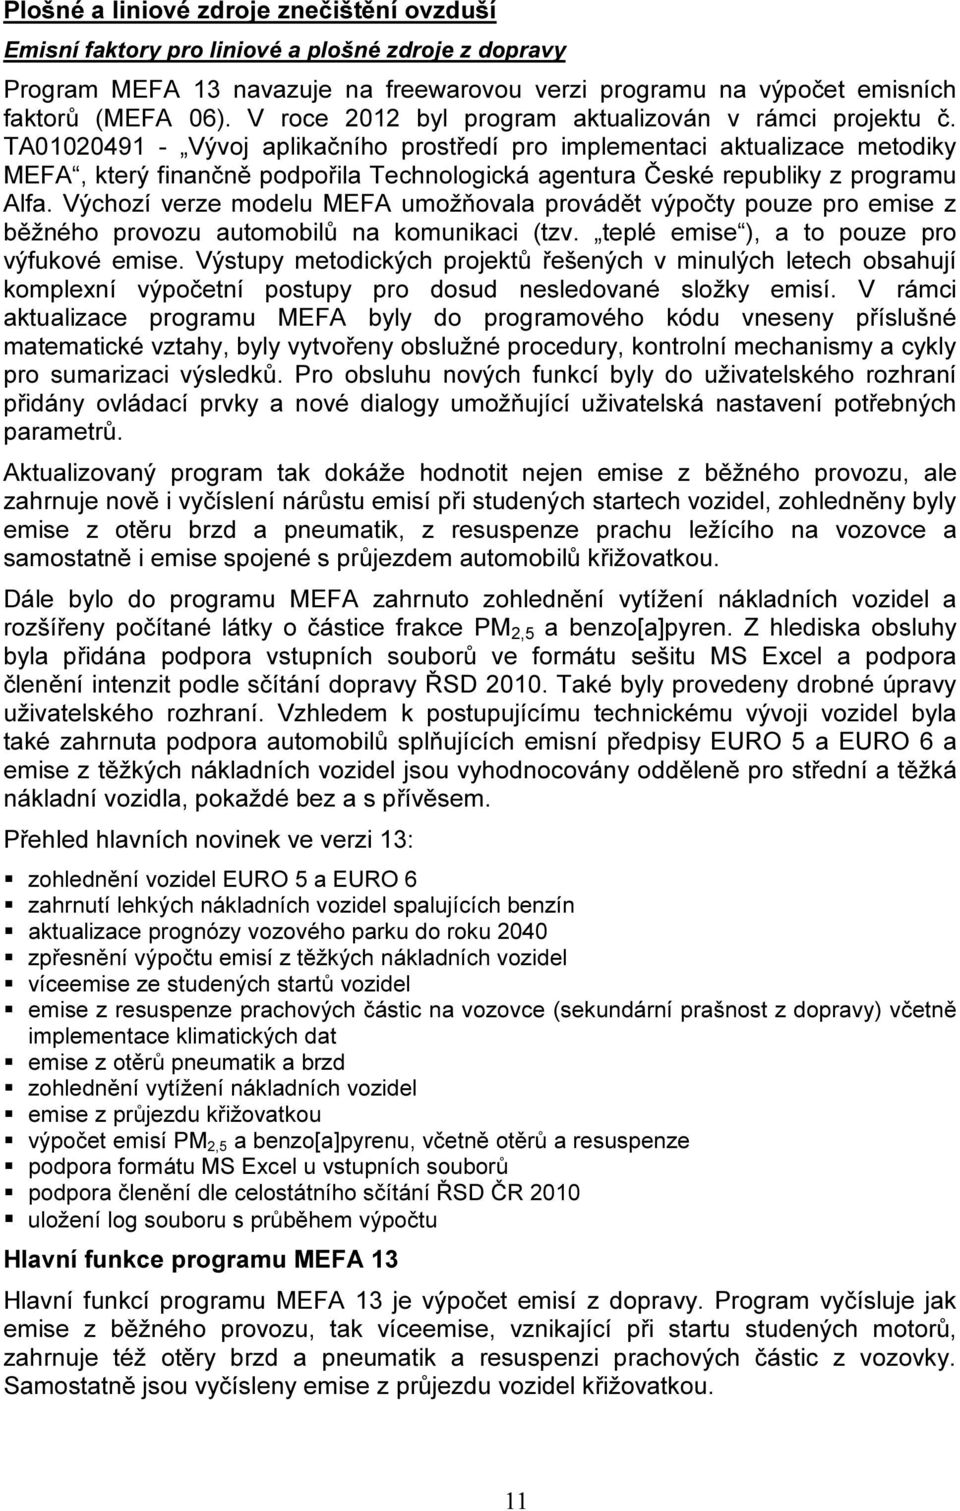 TA01020491 - Vývoj aplikačního prostředí pro implementaci aktualizace metodiky MEFA, který finančně podpořila Technologická agentura České republiky z programu Alfa.